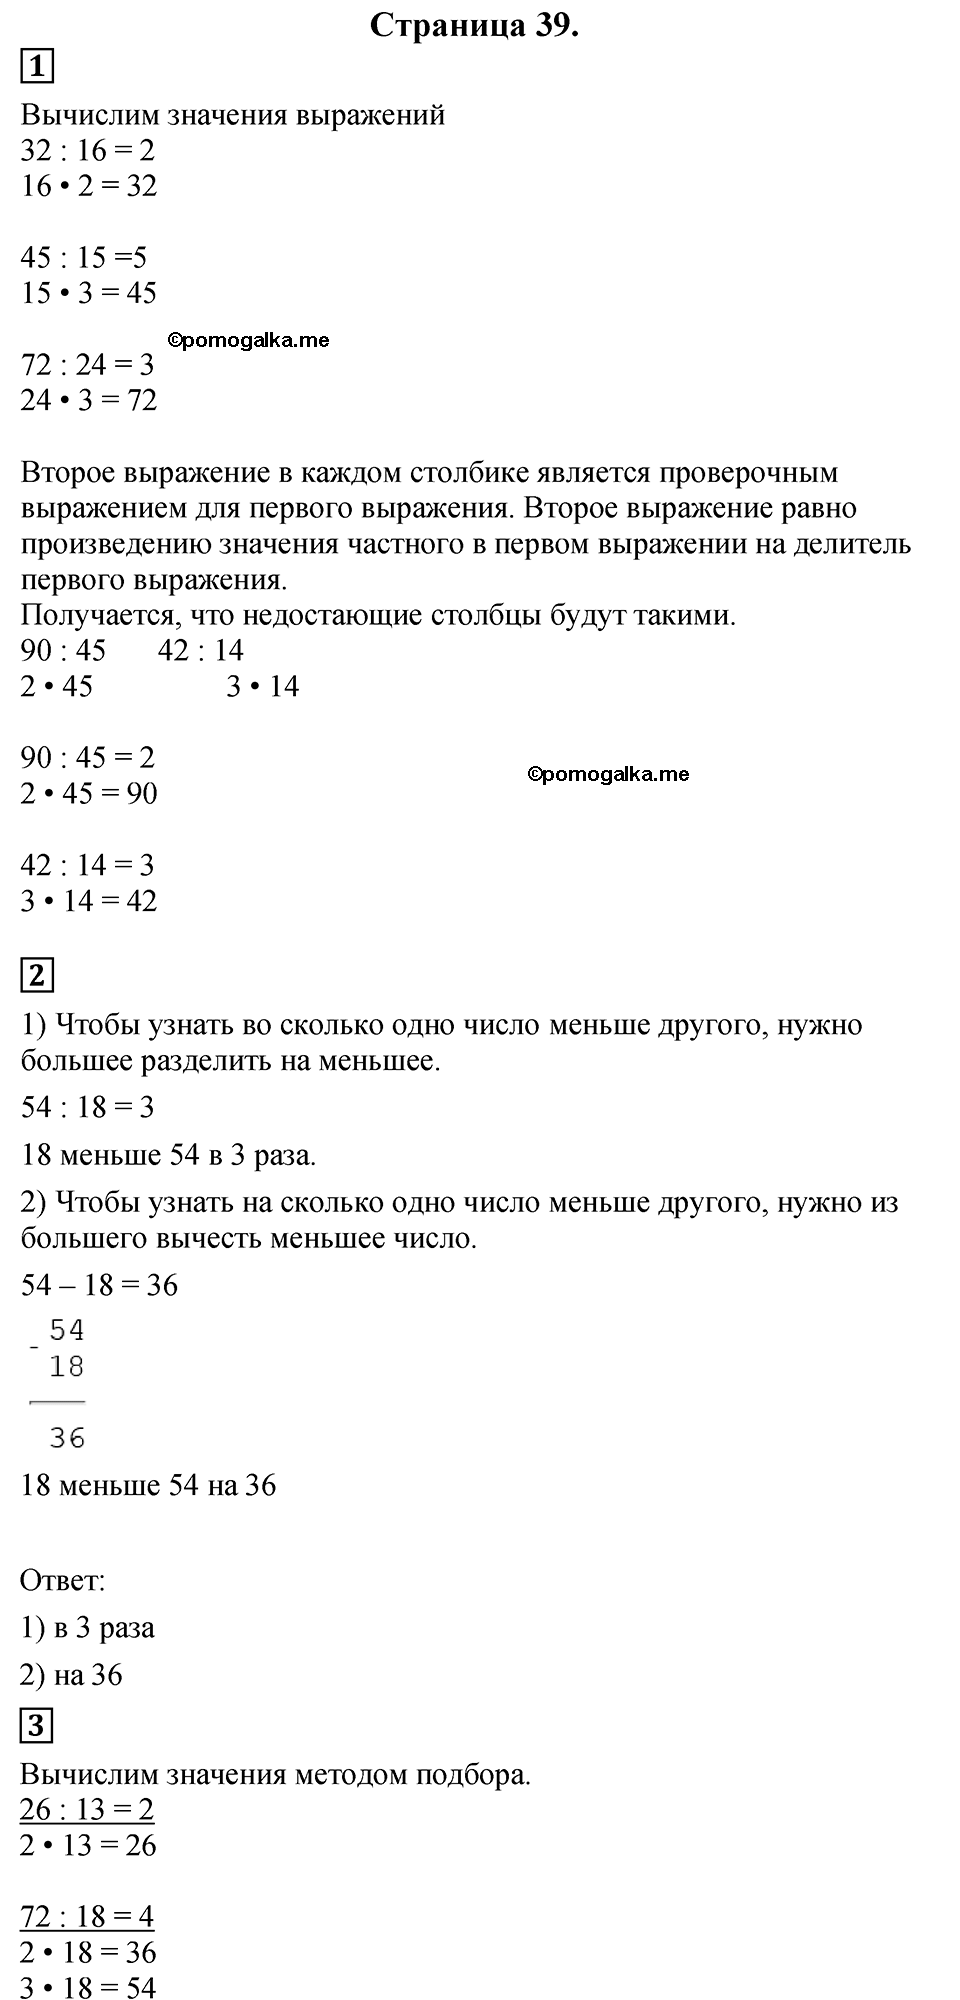 Страница №39 Часть 2 математика 3 класс Дорофеев